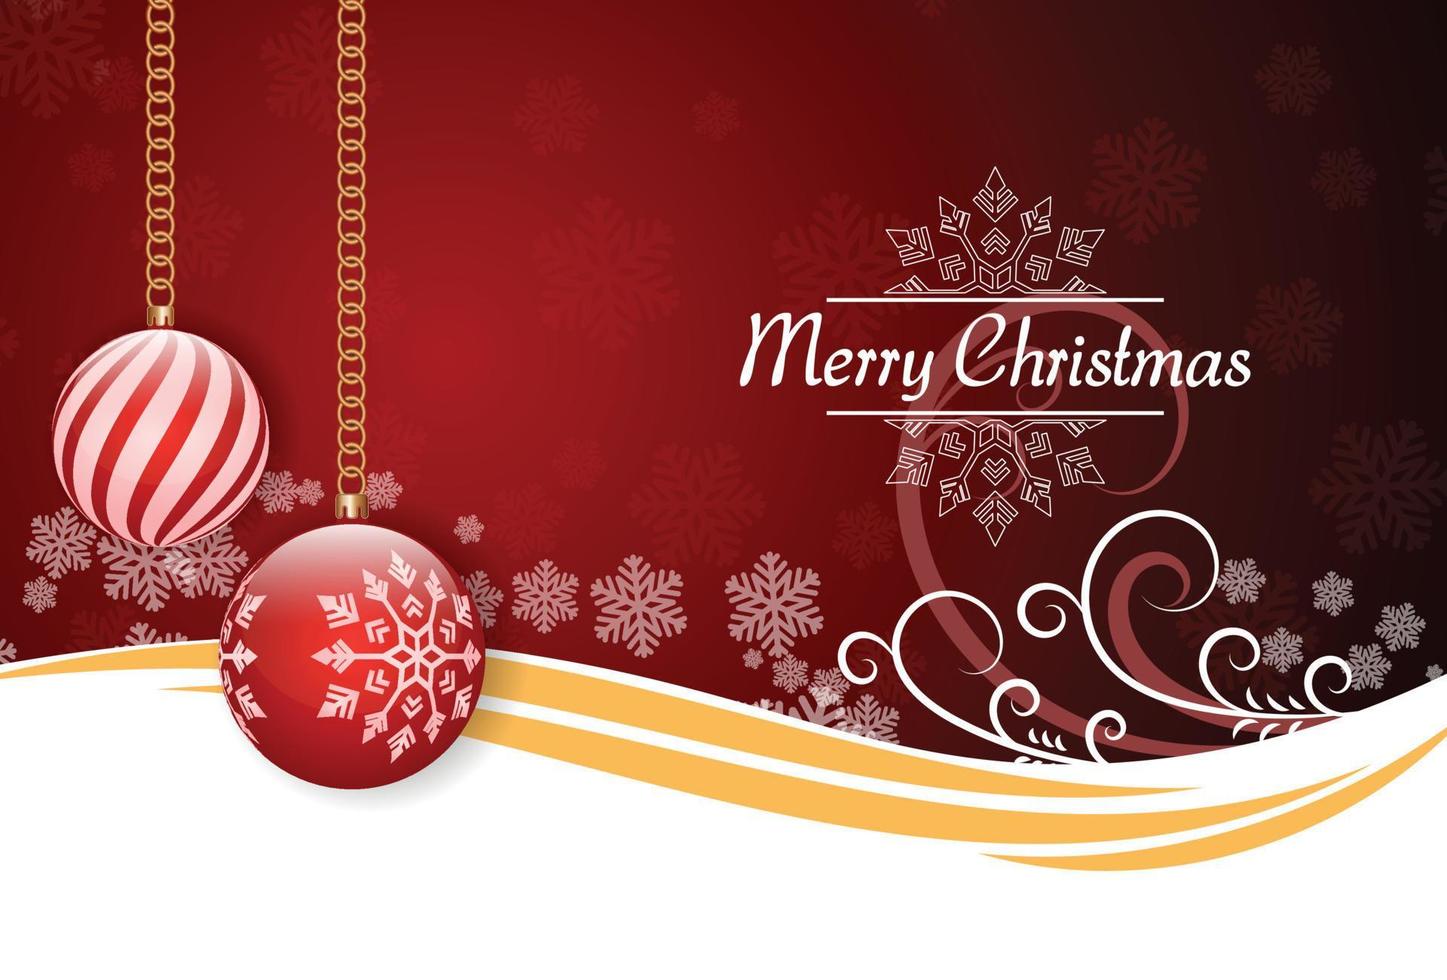 tarjeta de navidad moderna con elegantes detalles en rojo y bola de navidad con adorno de copos de nieve. concepto de tarjeta de felicitación de navidad. pasos vectoriales 10 vector